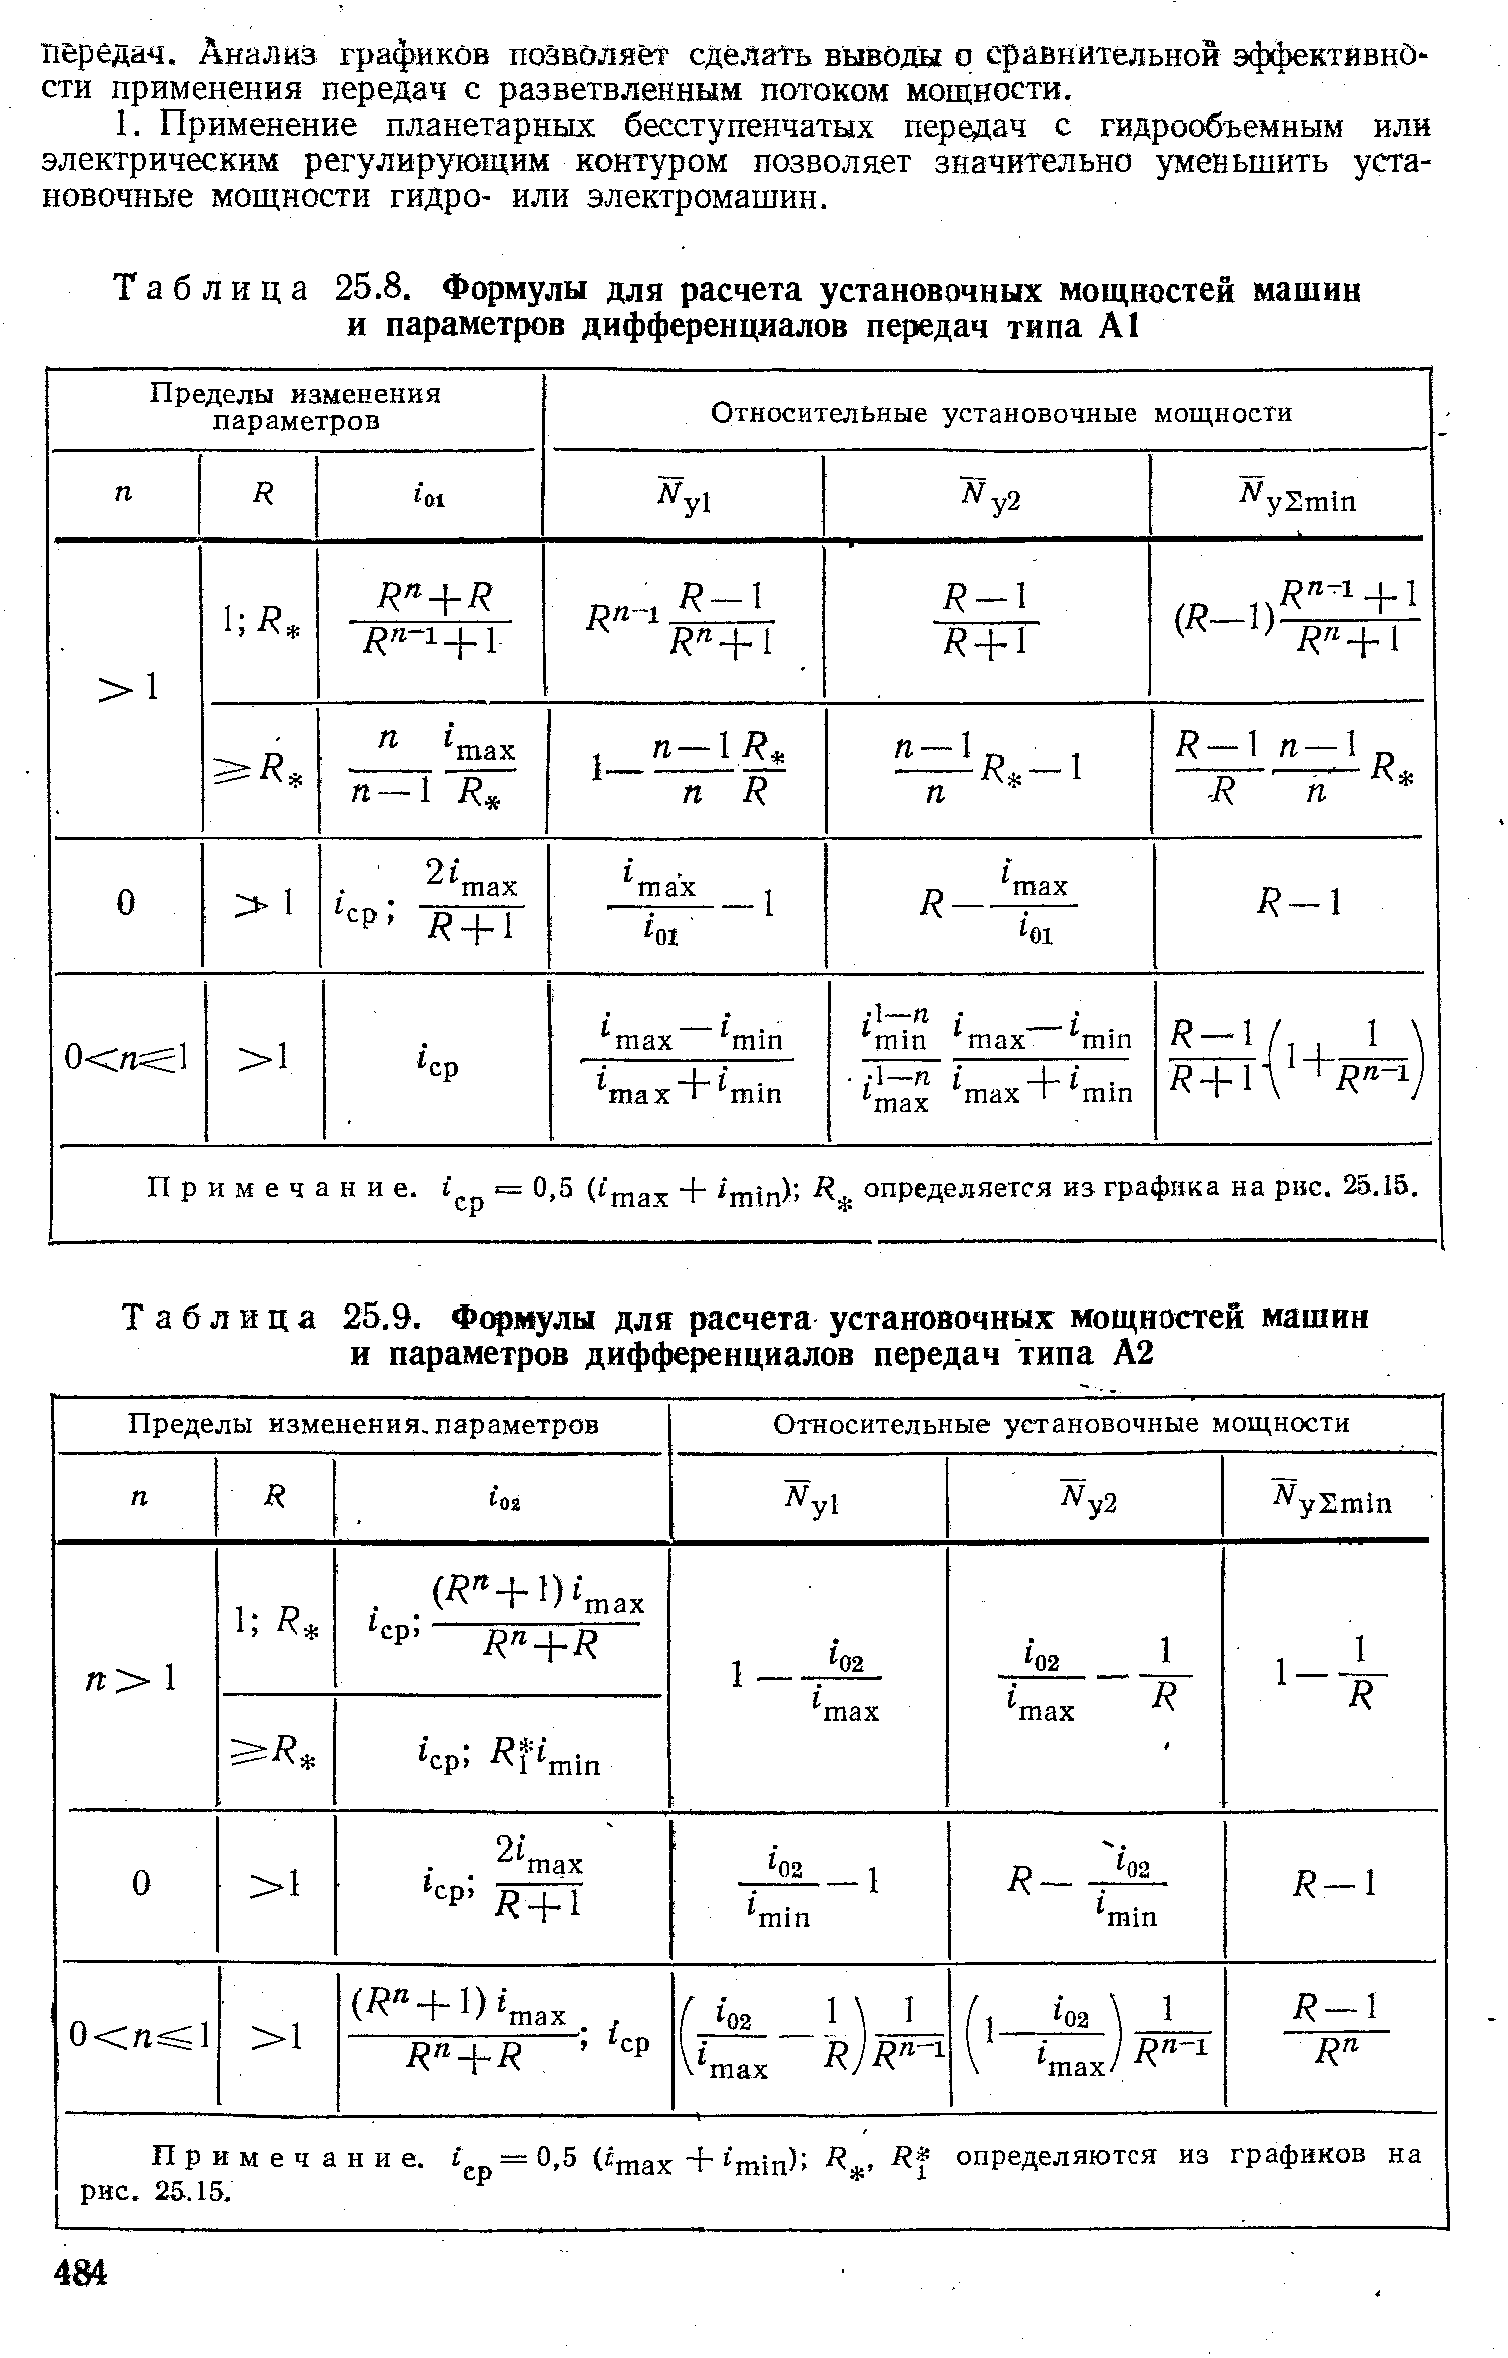 Таблица 25.8. Формулы для расчета установочных мощностей машин и параметров дифференциалов передач типа А1
